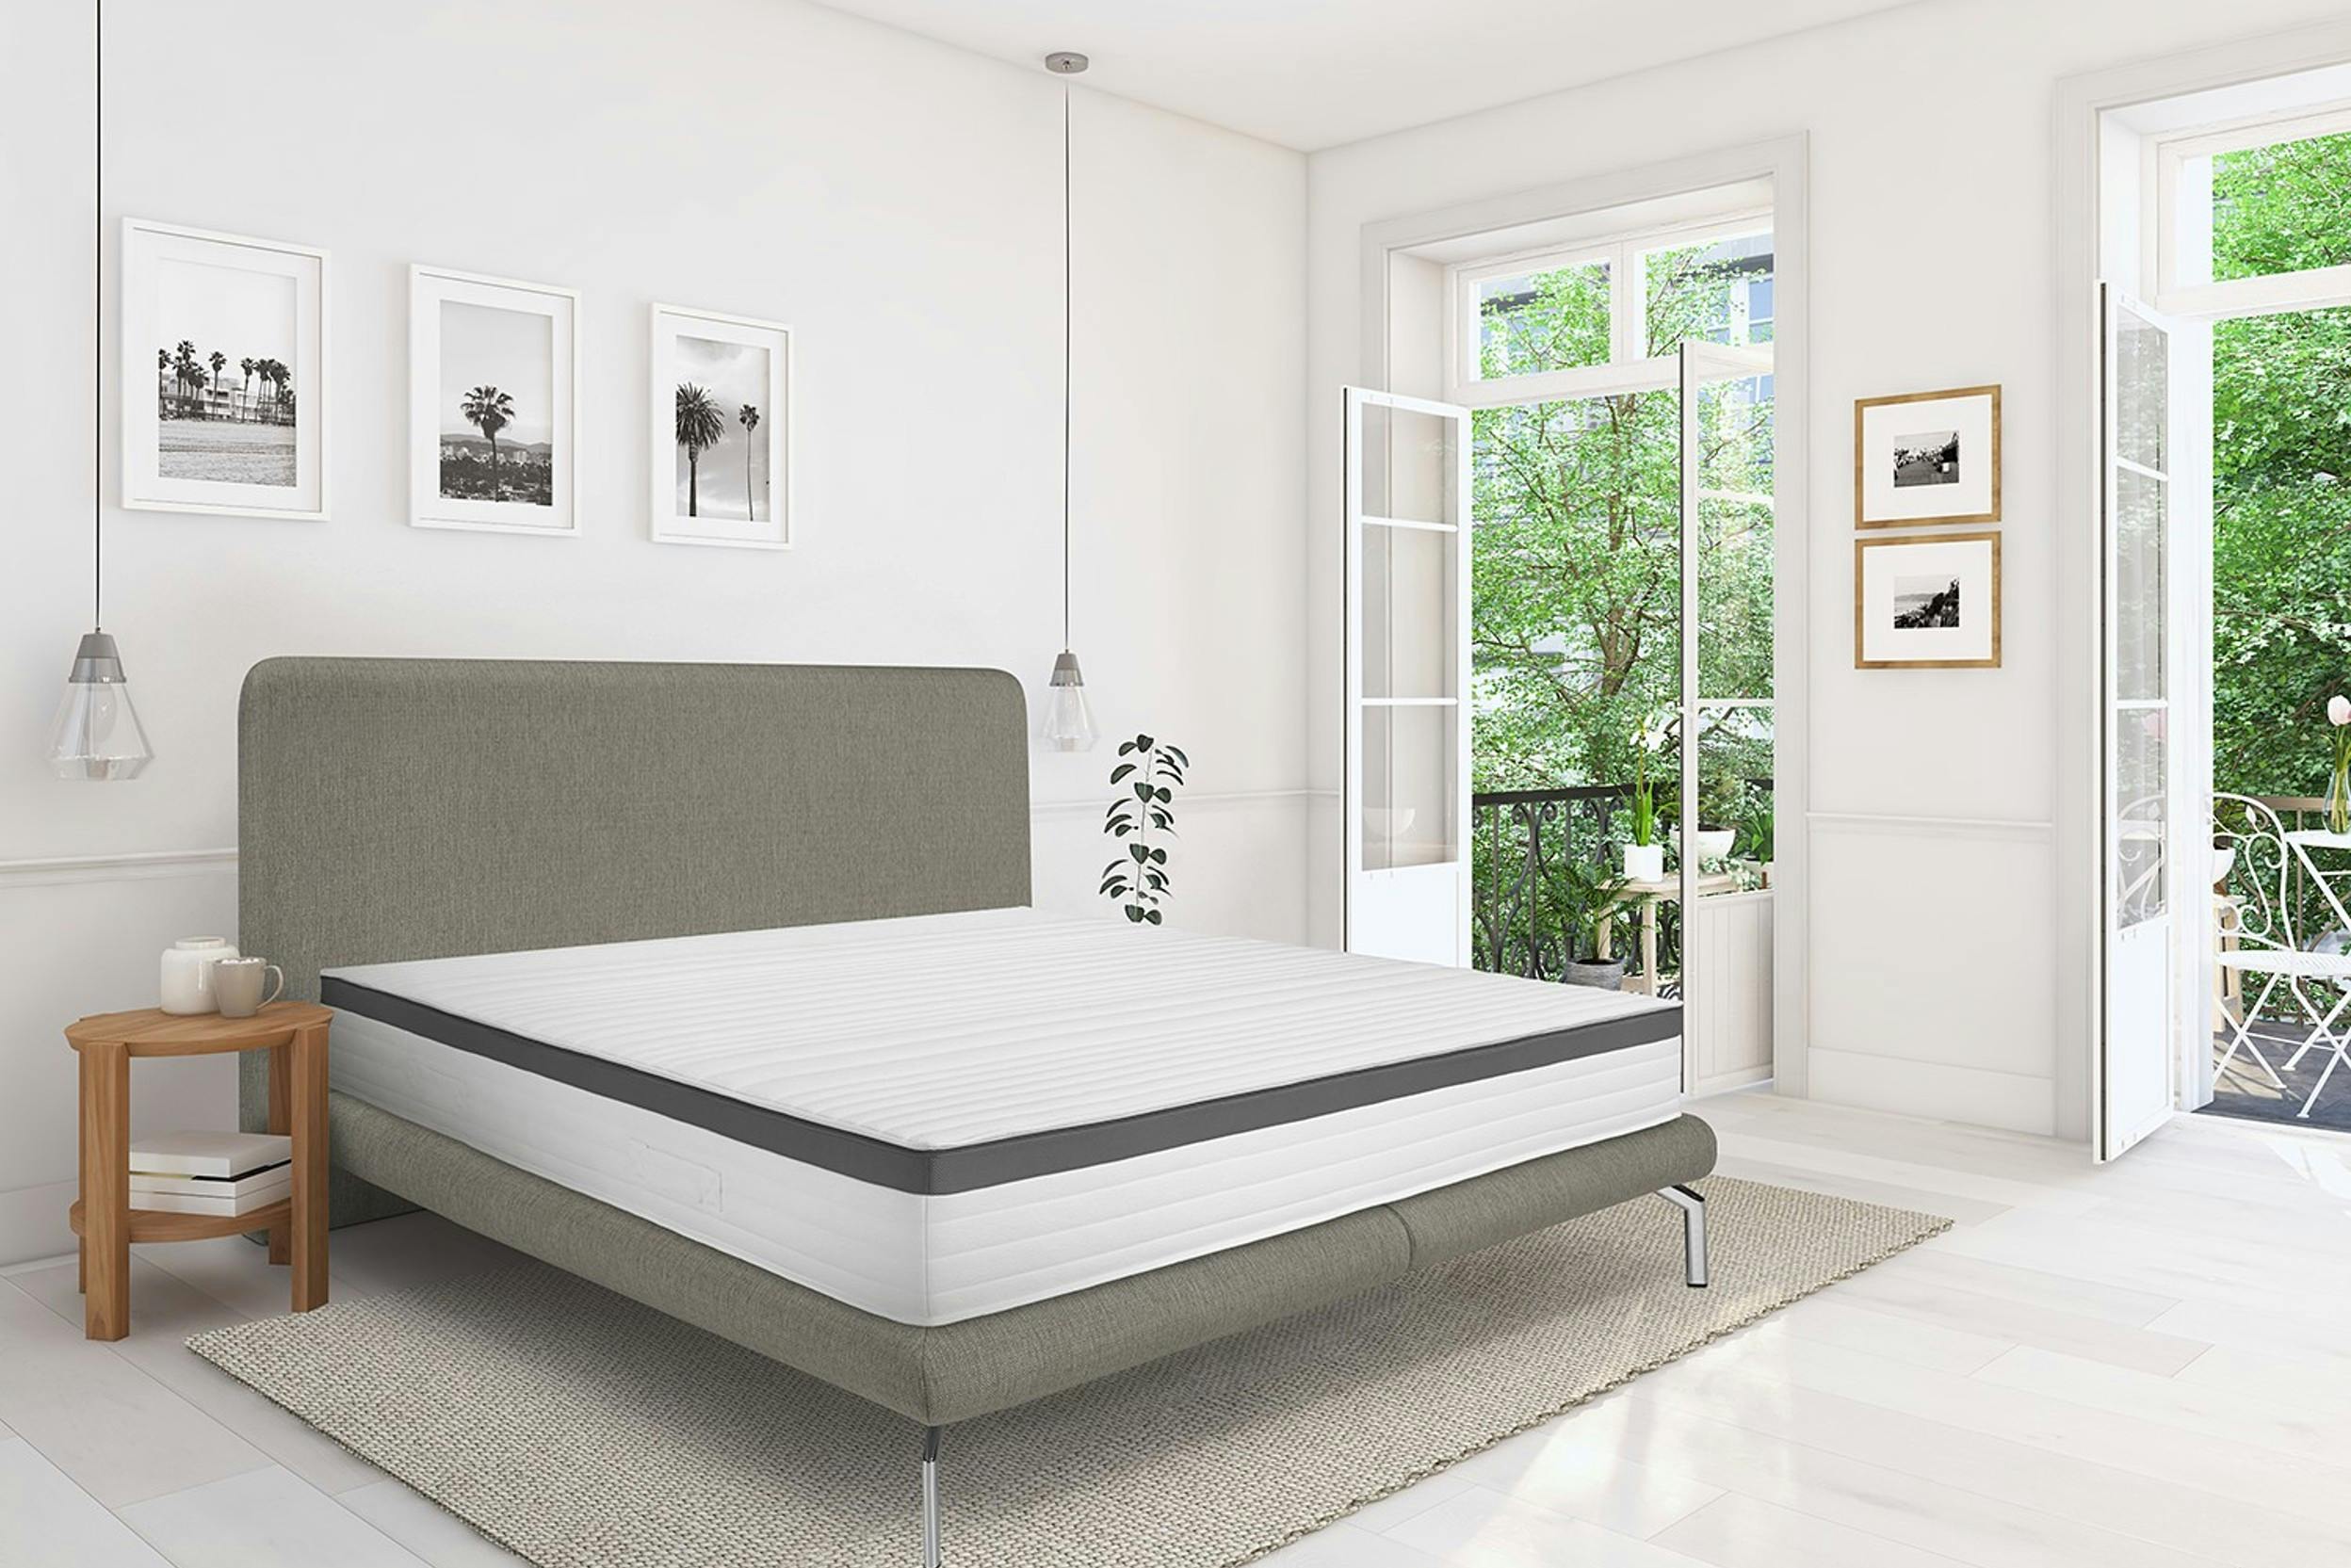 Helles Zimmer mit weit geöffneten Fenstern und grauem Bett samt Matratze